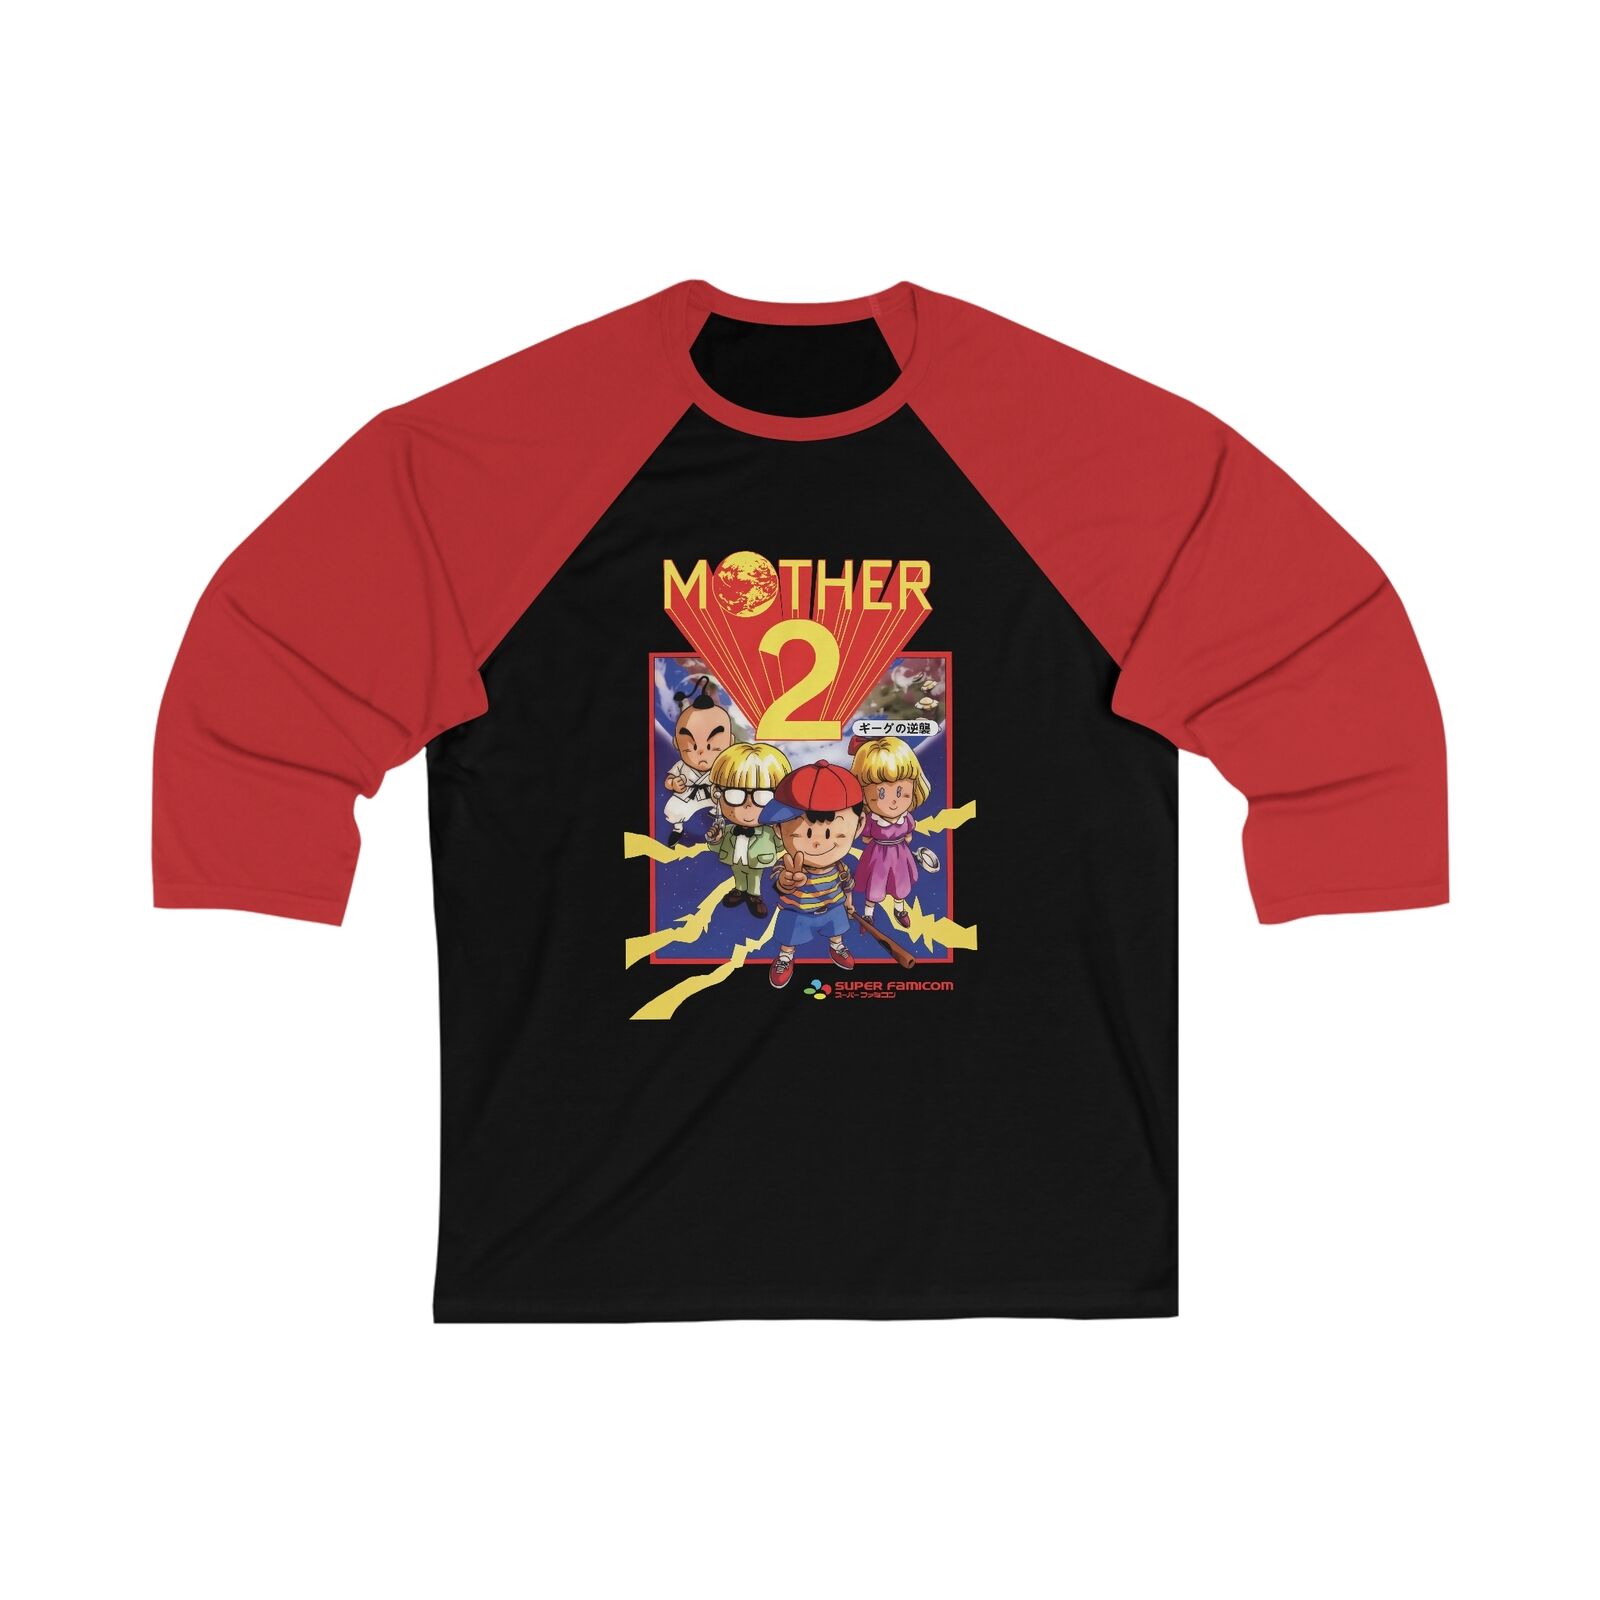 Mother 2 Earthbound [v3] - 3/4 Sleeve Baseball Shirt - Ness Lucas Smash Bros PK